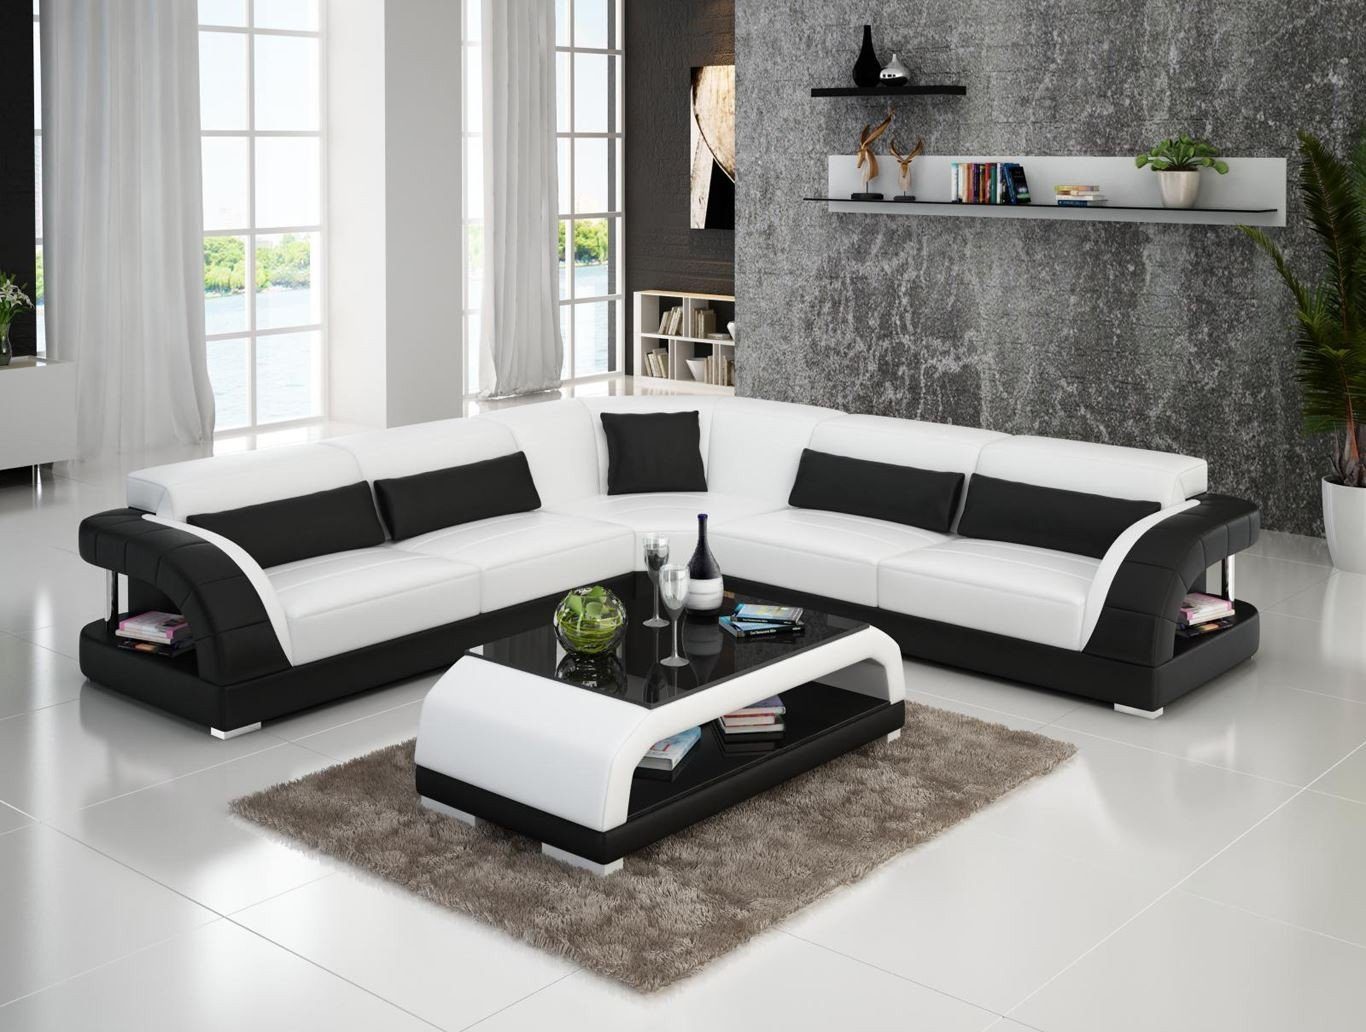 Ecksofa JVmoebel Design Ecksofa in Made Leder Europe Couch Modern, Weiß/Schwarz Wohnlandschaft Garnitur